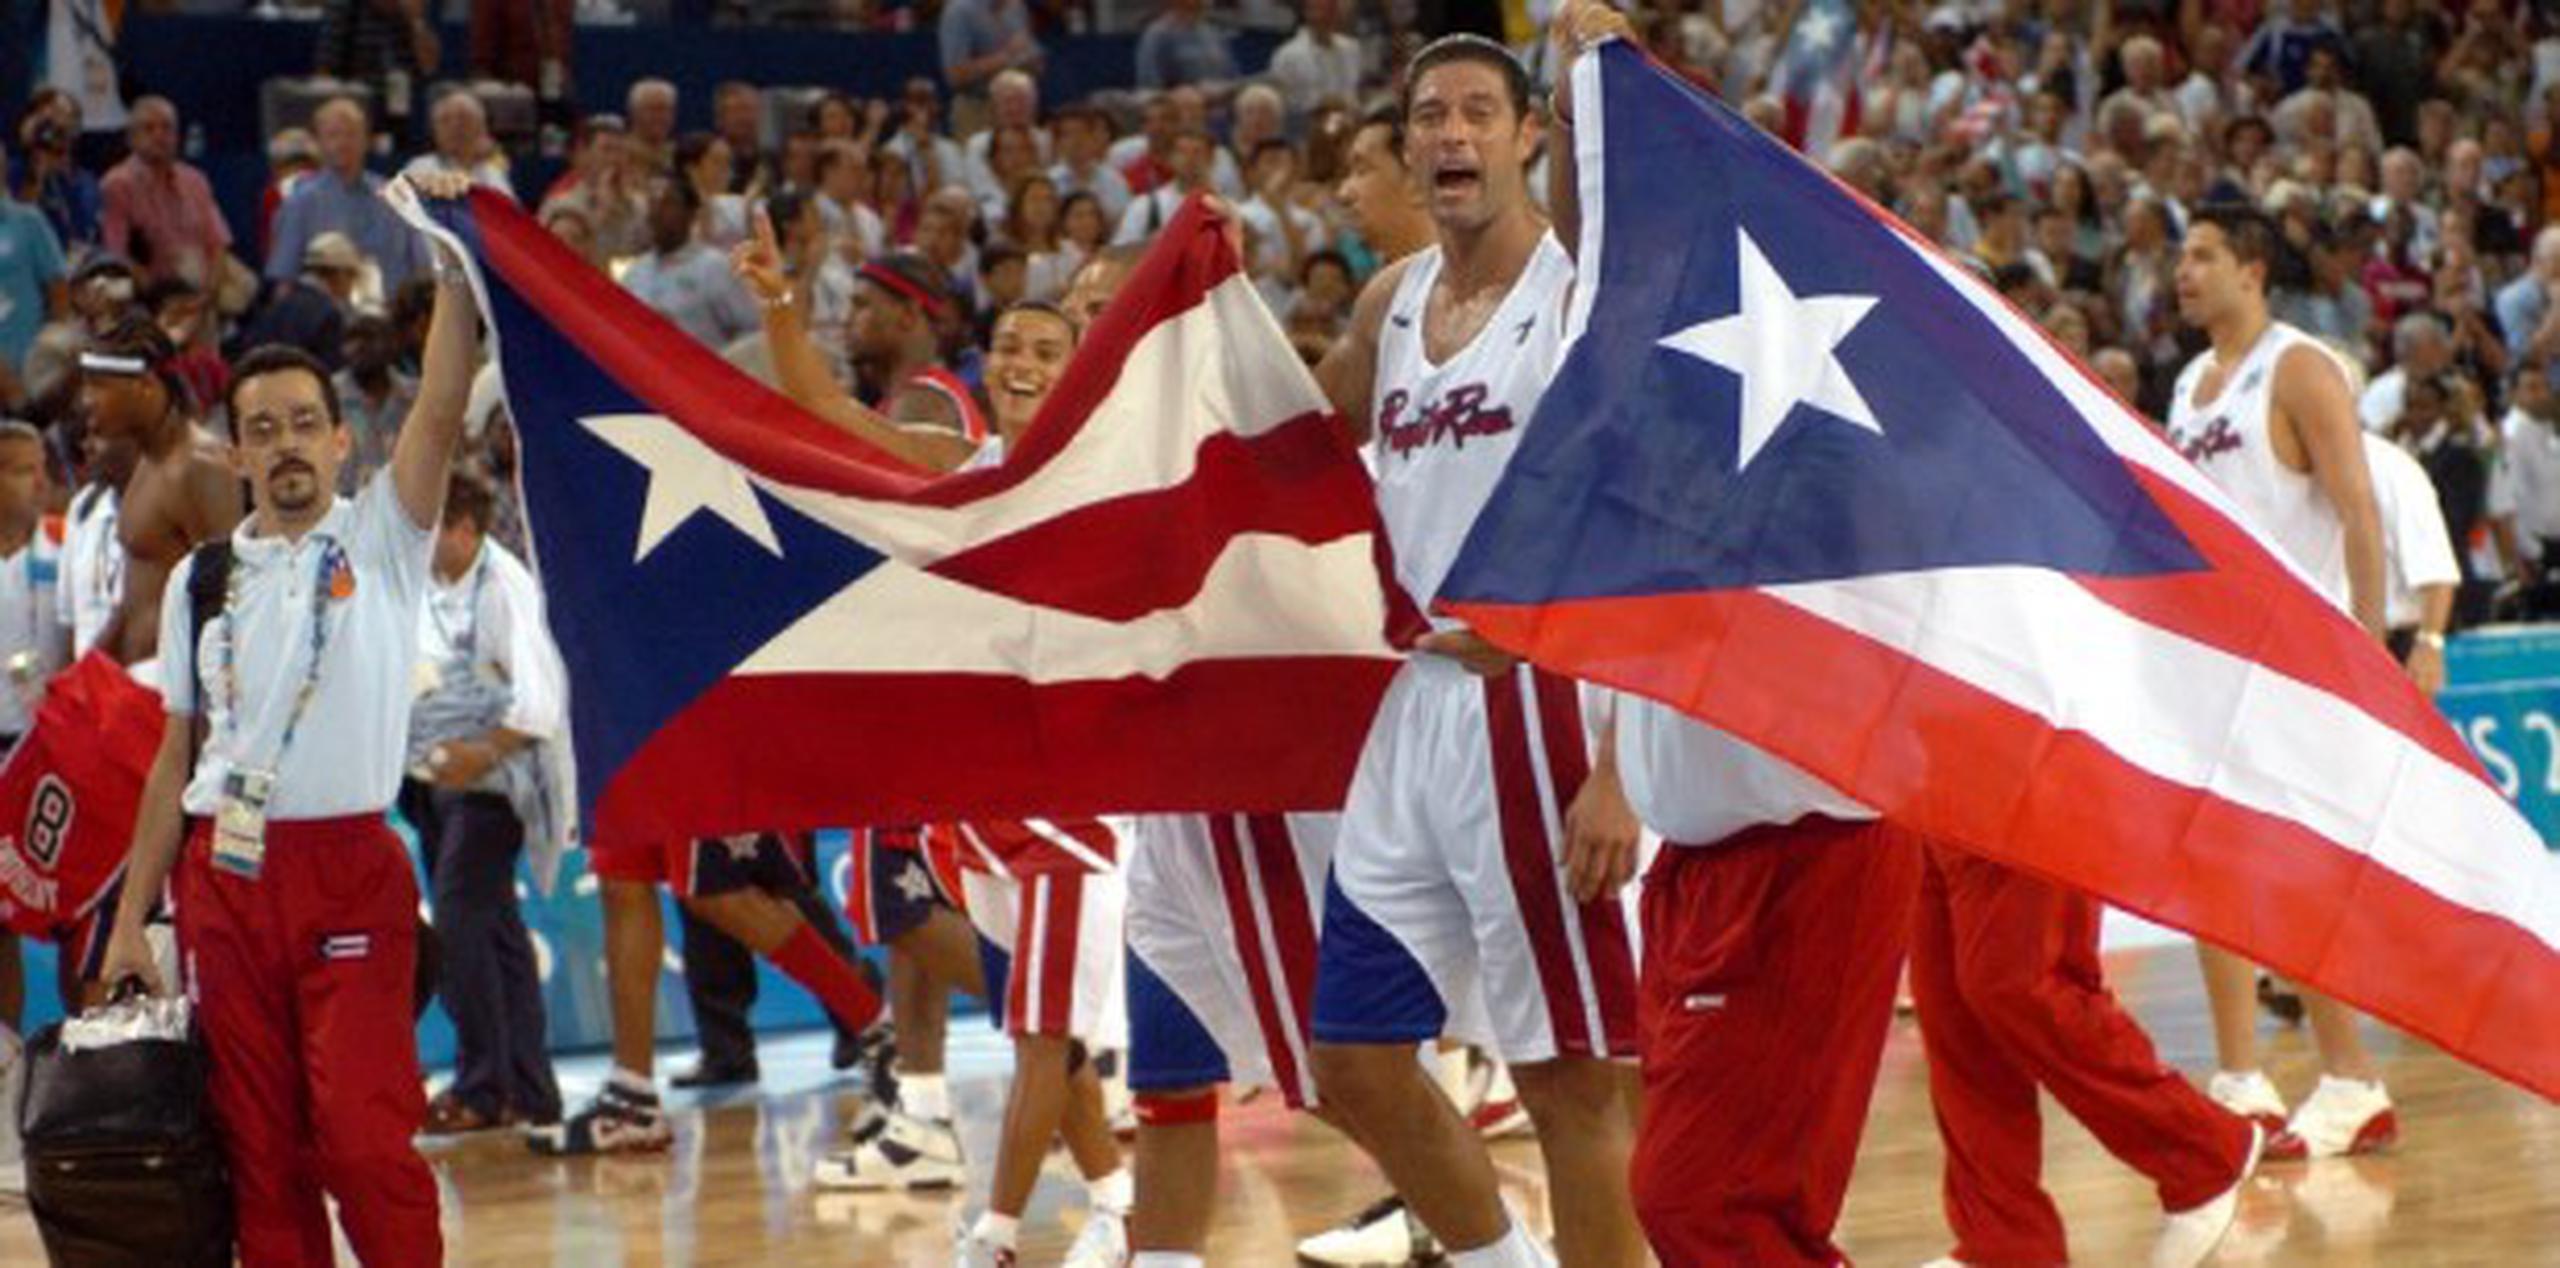 La victoria de la Selección de Baloncesto de Puerto Rico sobre el Dream Team en las Olimpiadas de 2004 desató una inmensa alegría y sentido patriótico en el pueblo puertorriqueño. (Archivo)